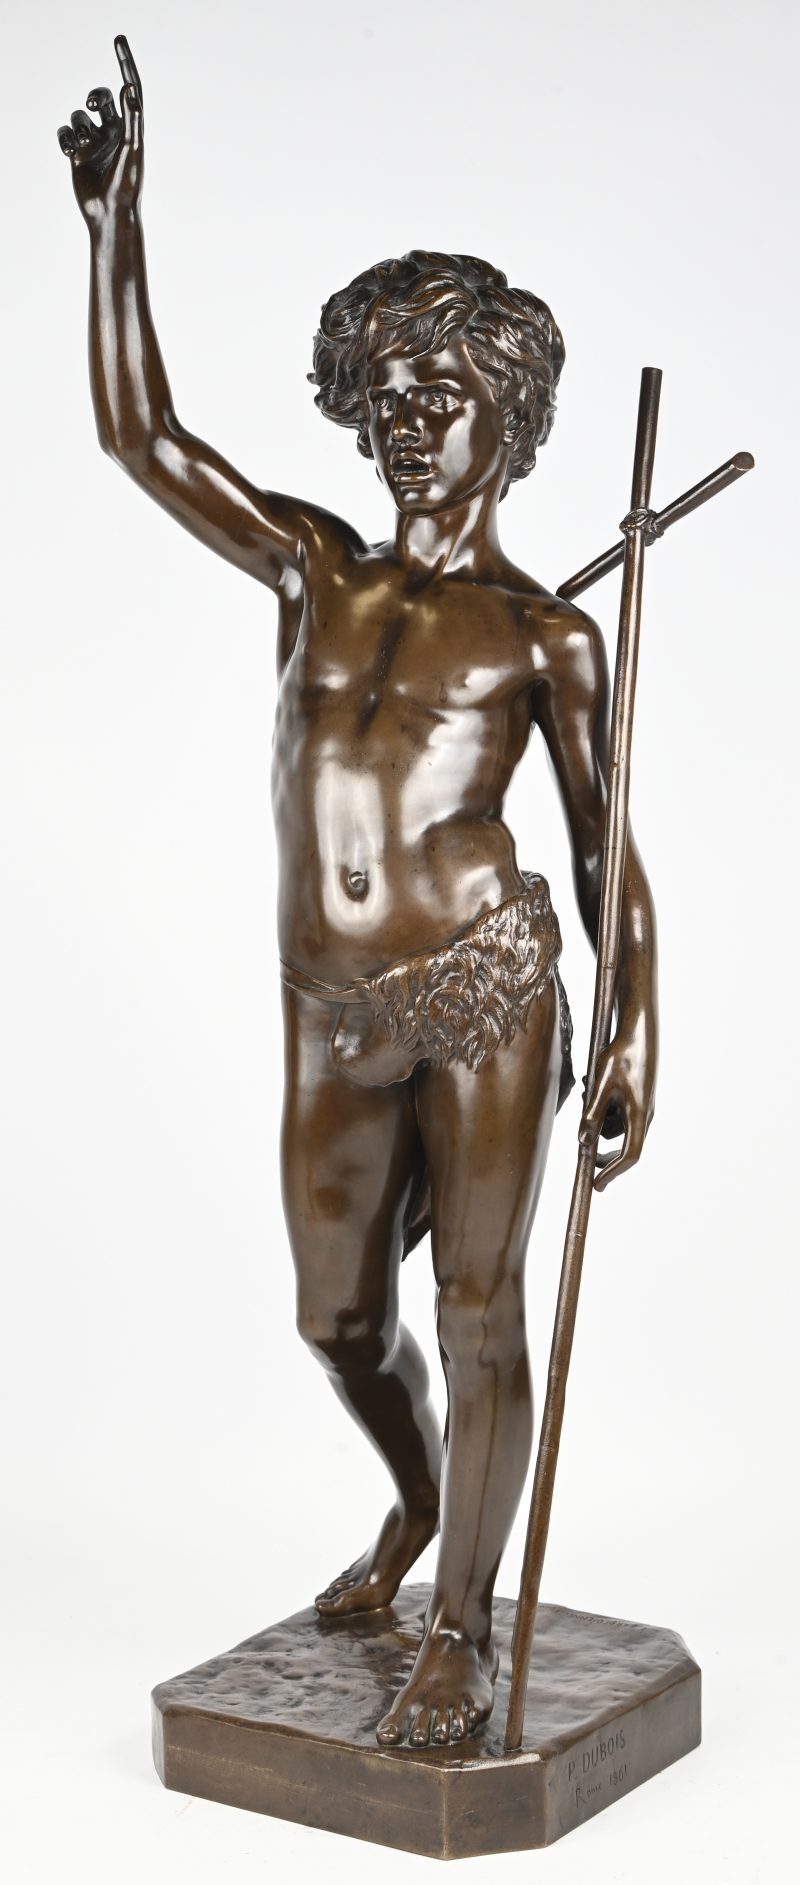 "Saint Jean-Baptiste enfant". Gesigneerd ‘P. Dubois’, Rome 1861, bronsgieterij F. Barbedienne.